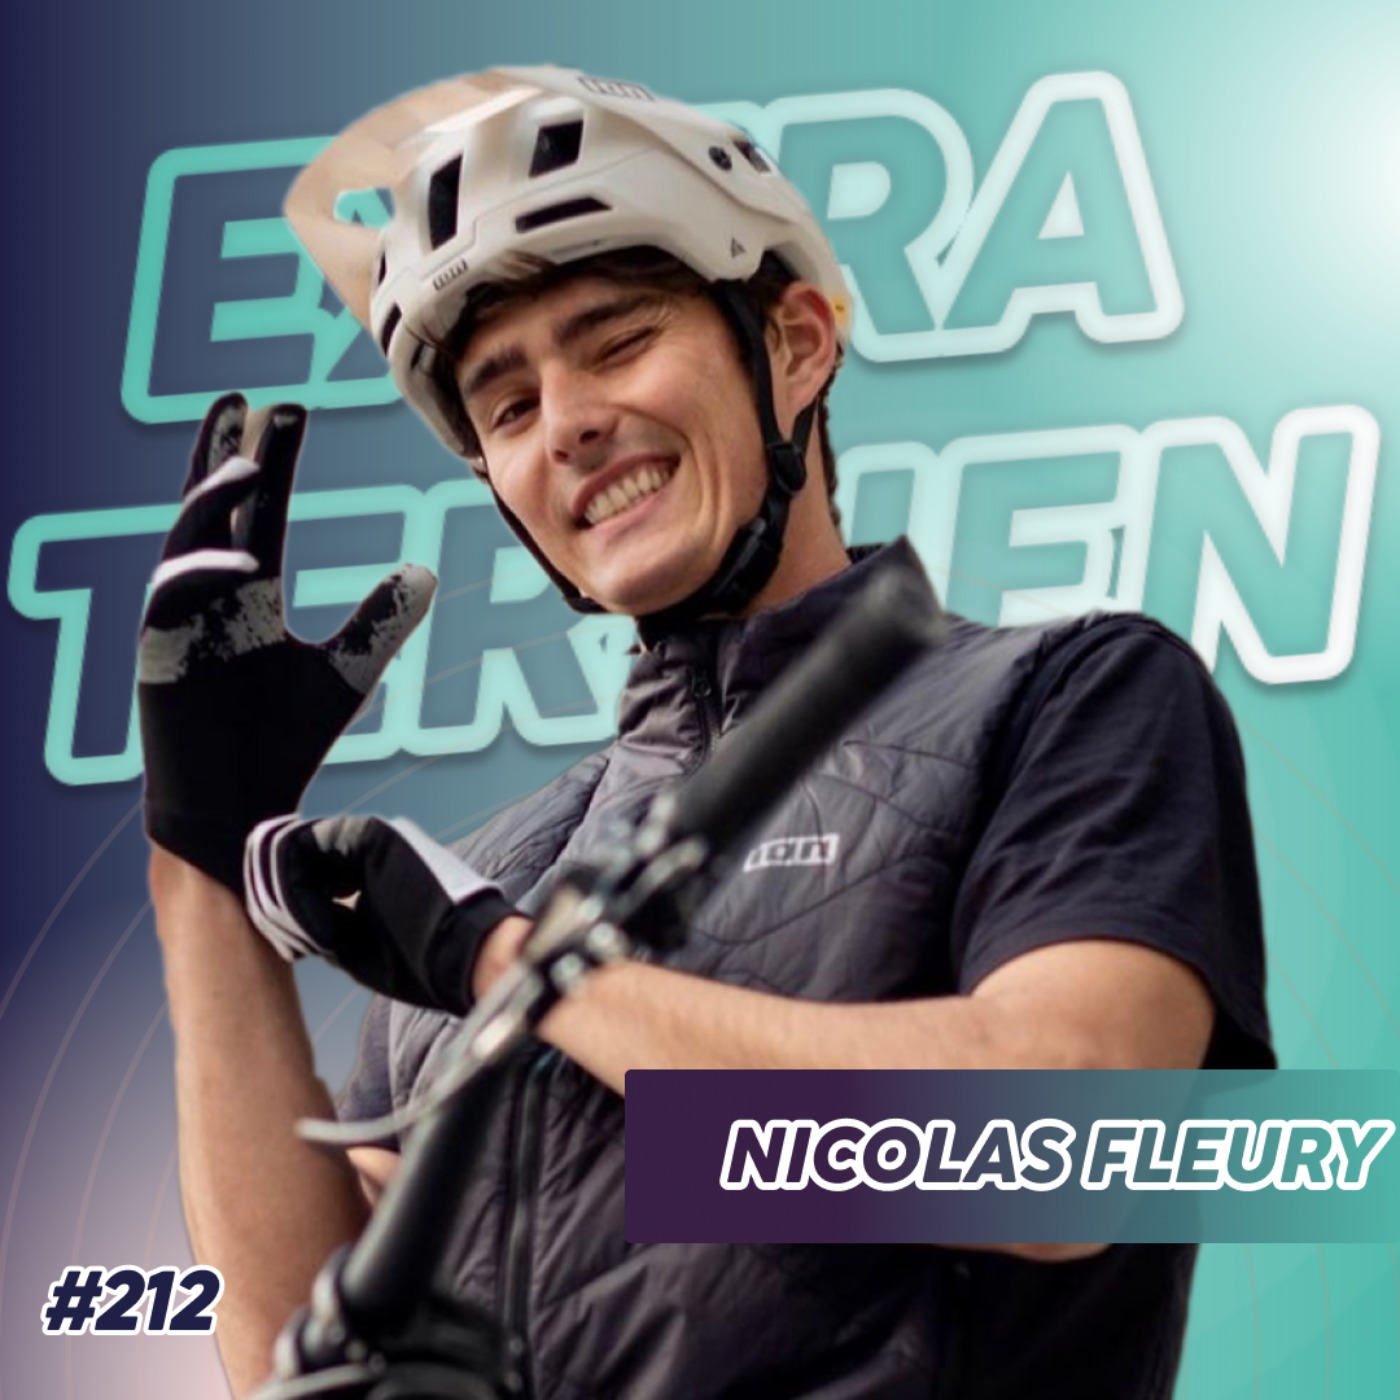 Nicolas Fleury - Vivre de son sport grâce aux réseaux sociaux